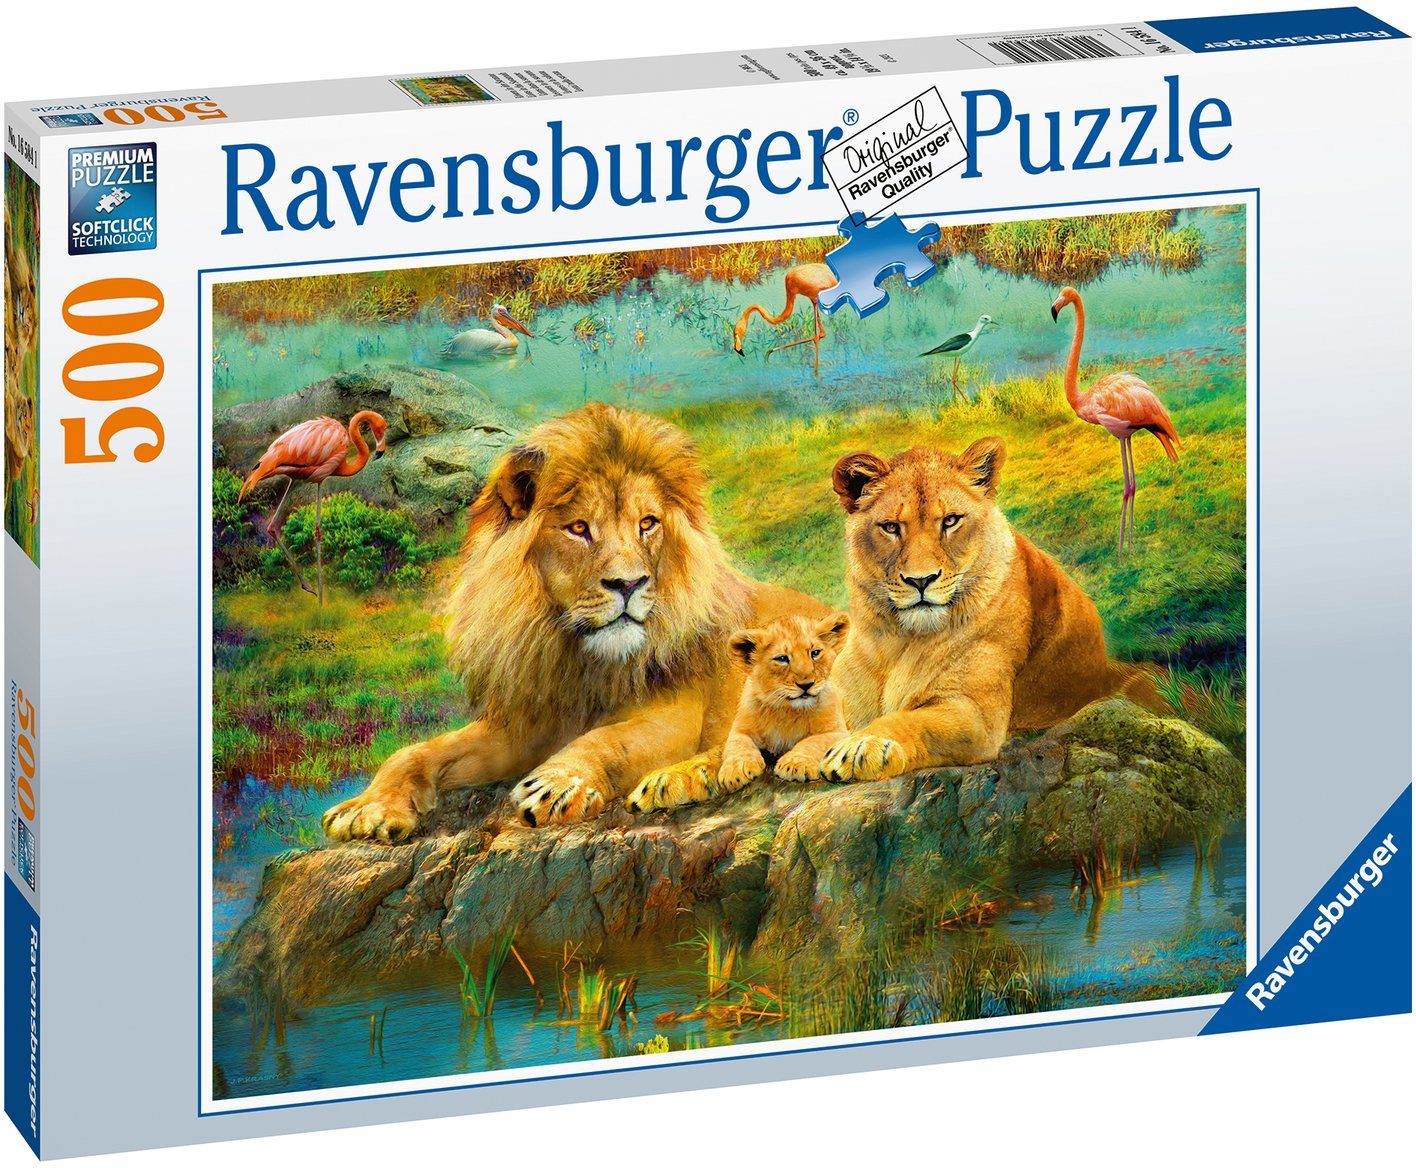 Puzzle Löwen Savanne, - Germany, in - FSC® in Puzzleteile, weltweit Wald schützt Ravensburger Made 500 der